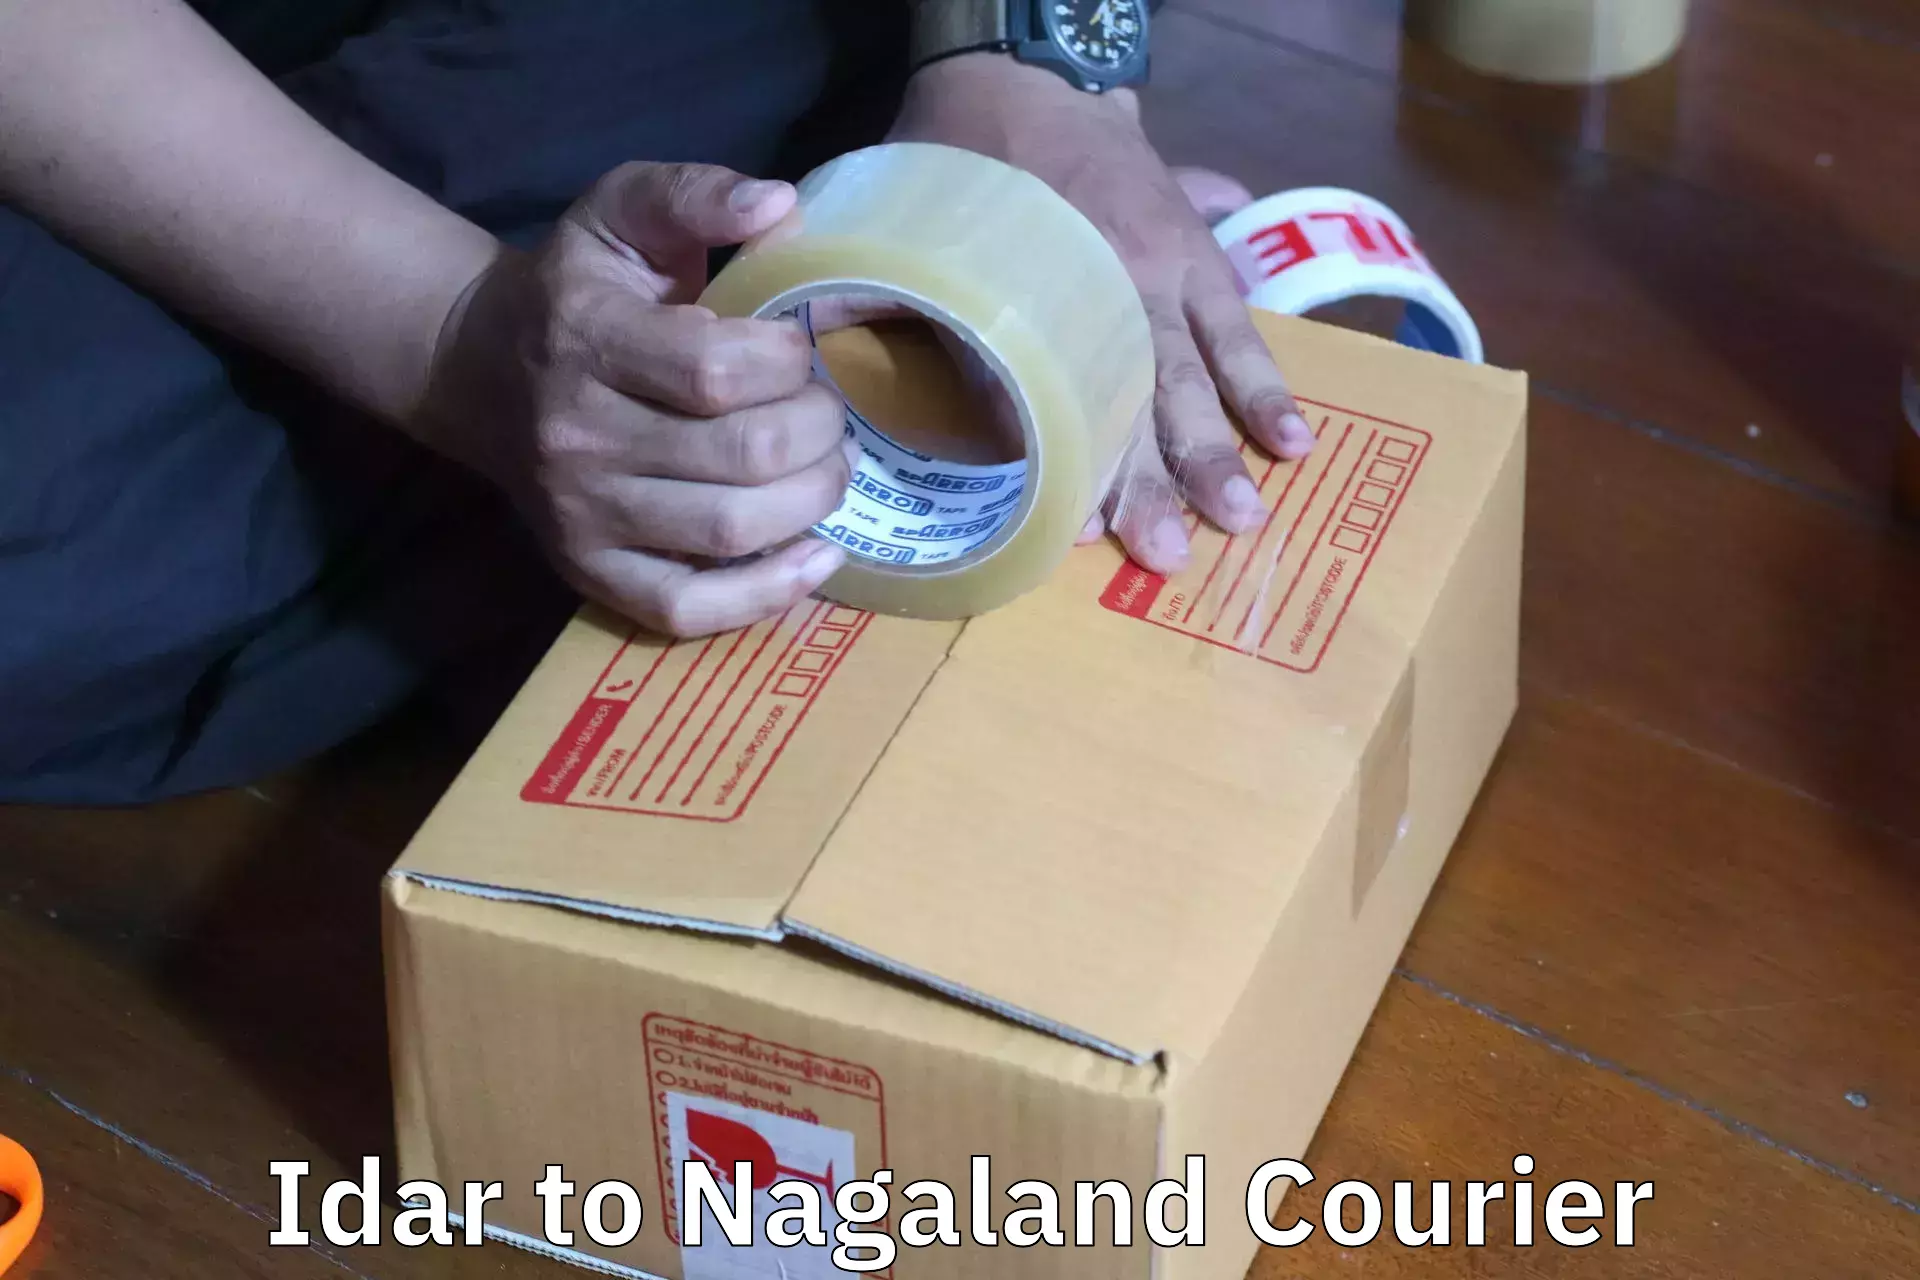 Budget-friendly movers Idar to Nagaland